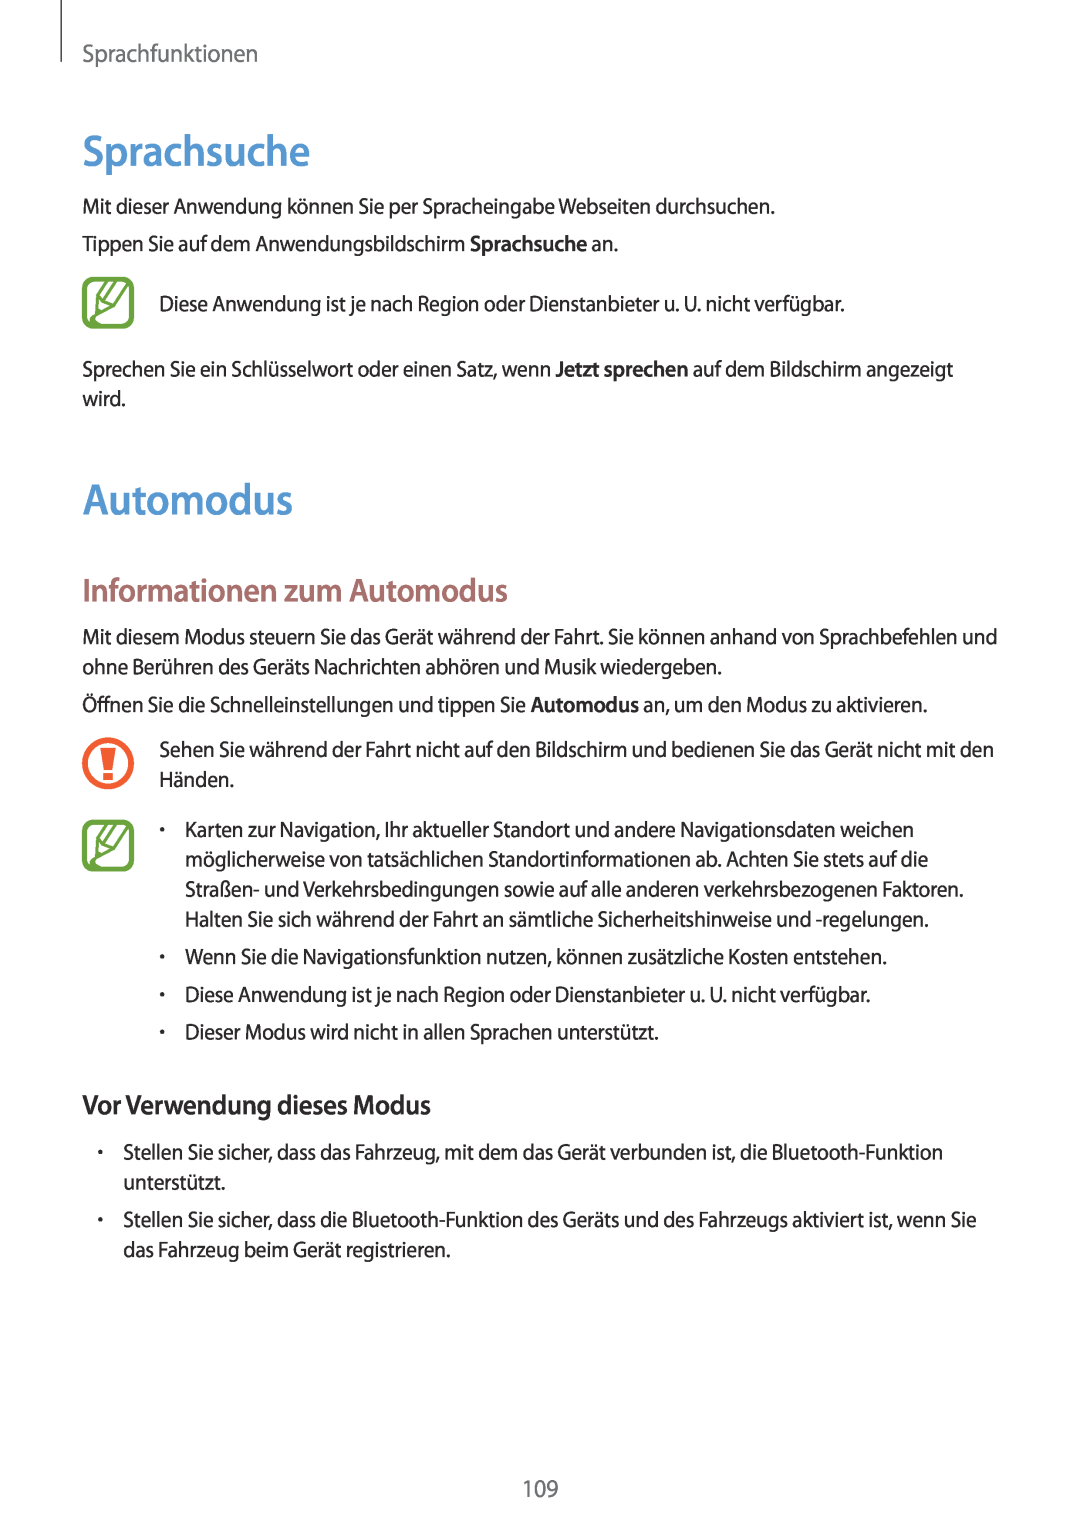 Samsung SM-G901FZKADTM manual Sprachsuche, Informationen zum Automodus, Vor Verwendung dieses Modus, Sprachfunktionen 